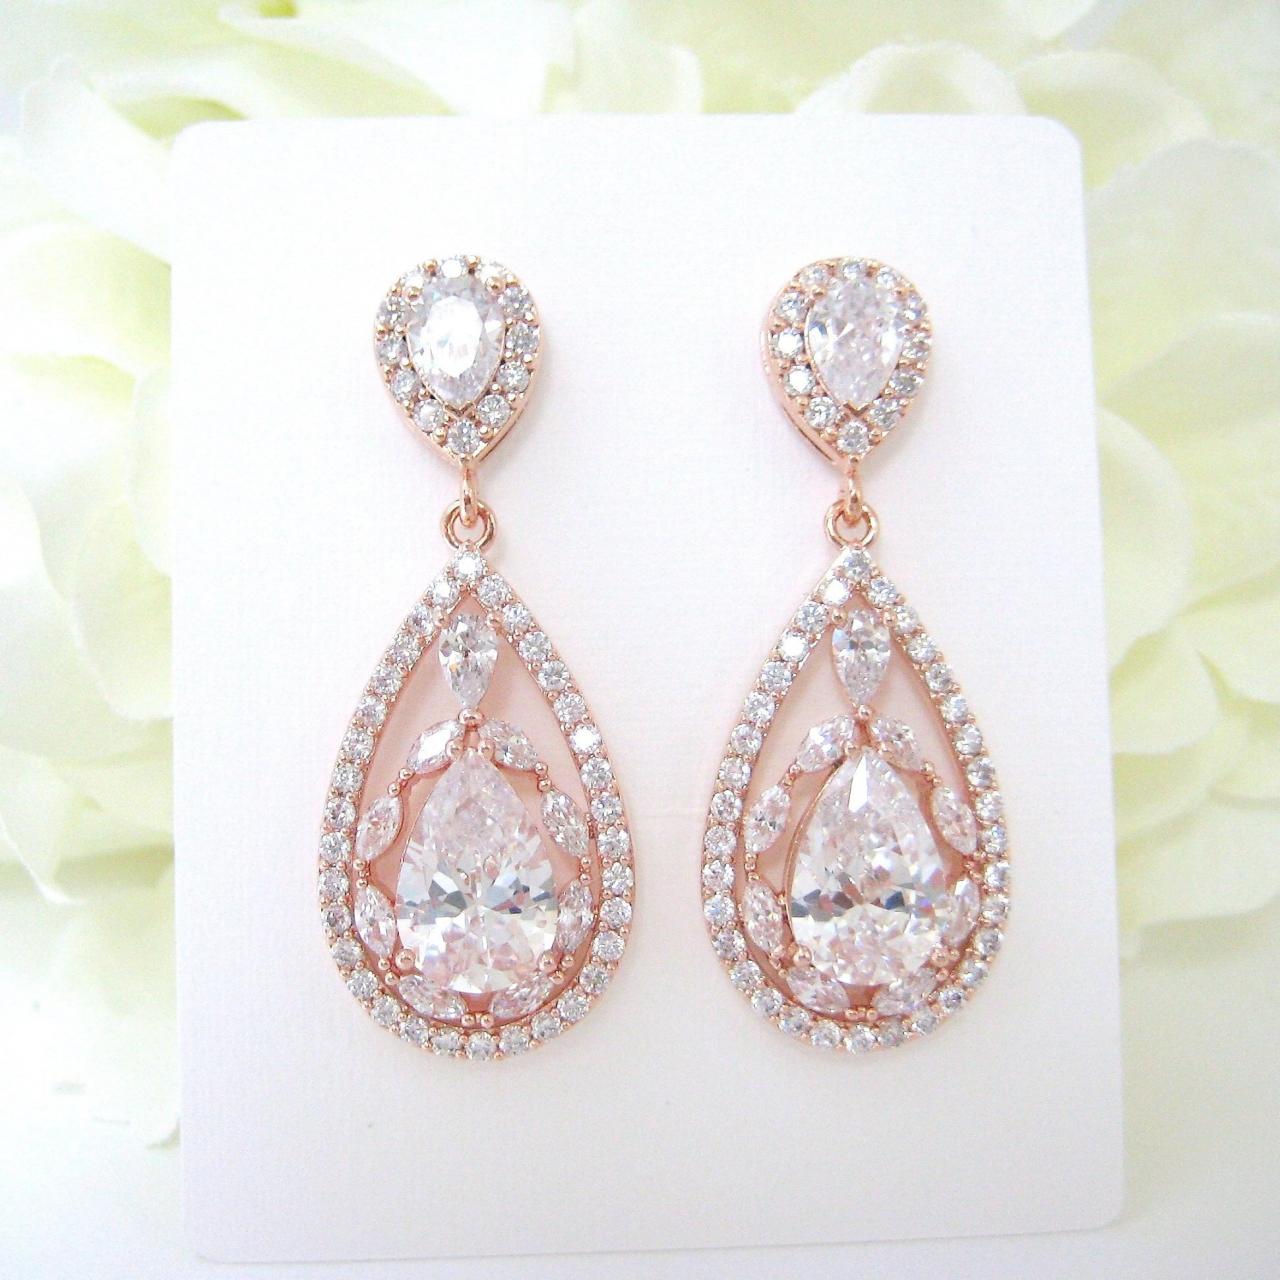 Crystal Bridal Earrings In Rose Gold, Clear Cubic Zirconia Teardrop Earrings, Wedding Jewelry Chandelier Earrings Bridesmaid Gift (e207)